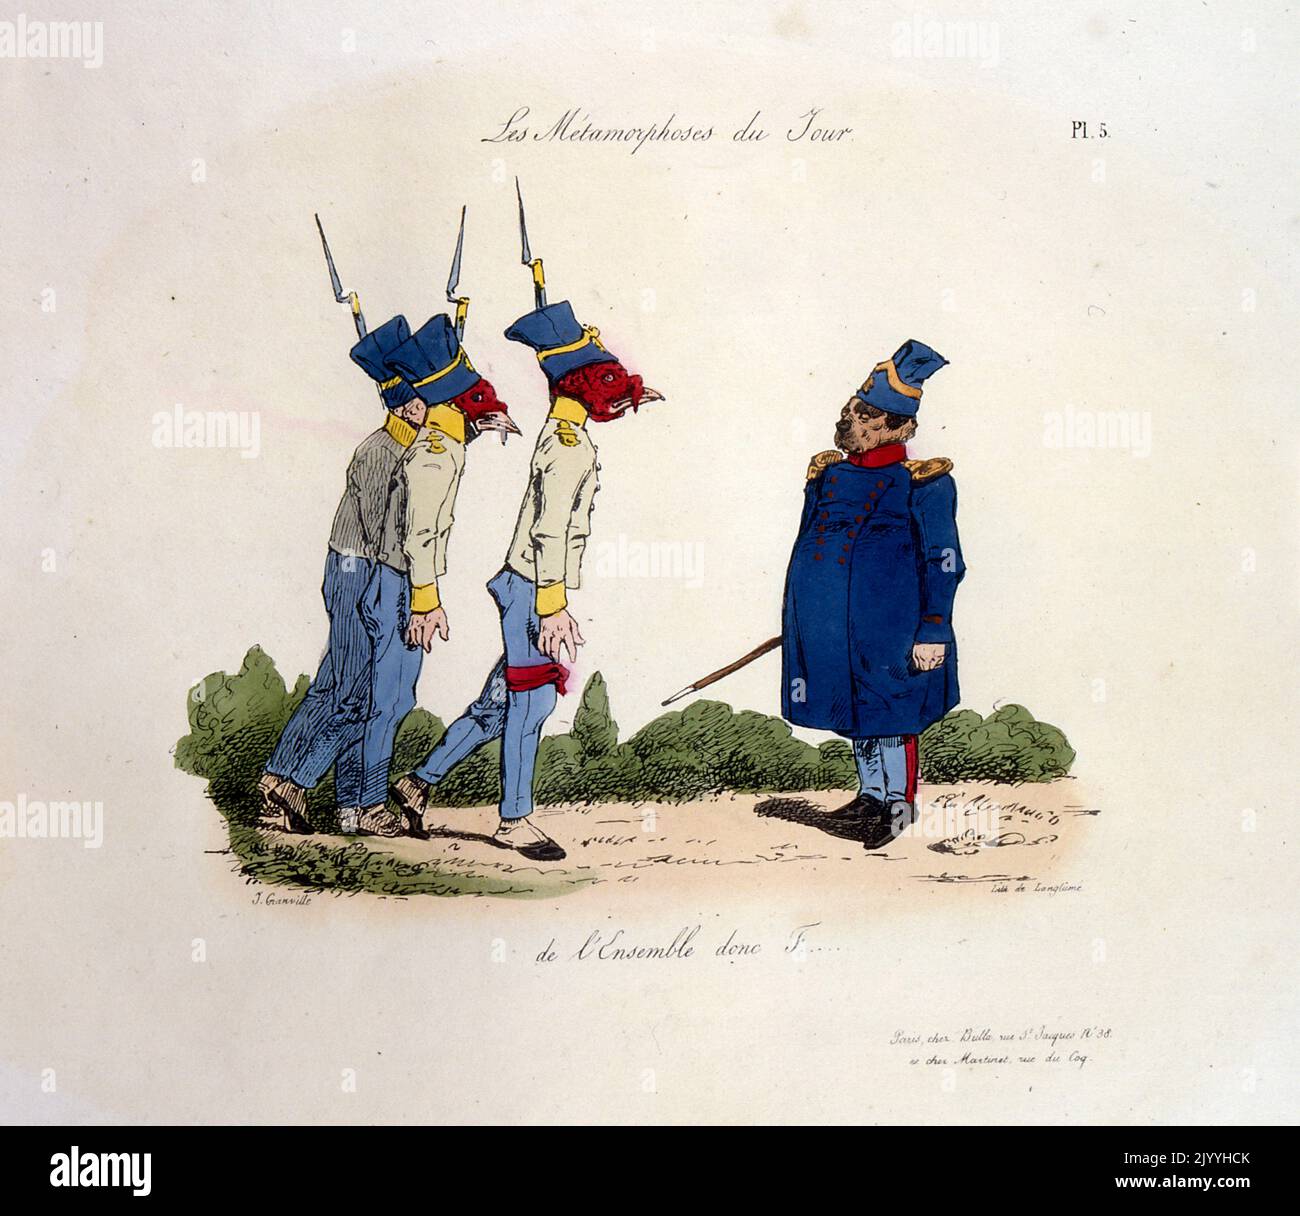 Immagine satirica colorata di un cane vestito in uniforme militare generale che regge un batone. Tre dei suoi soldati gli inciampano in modo disonesto. Di Pierre Langlume (1790-1830), artista francese. Foto Stock